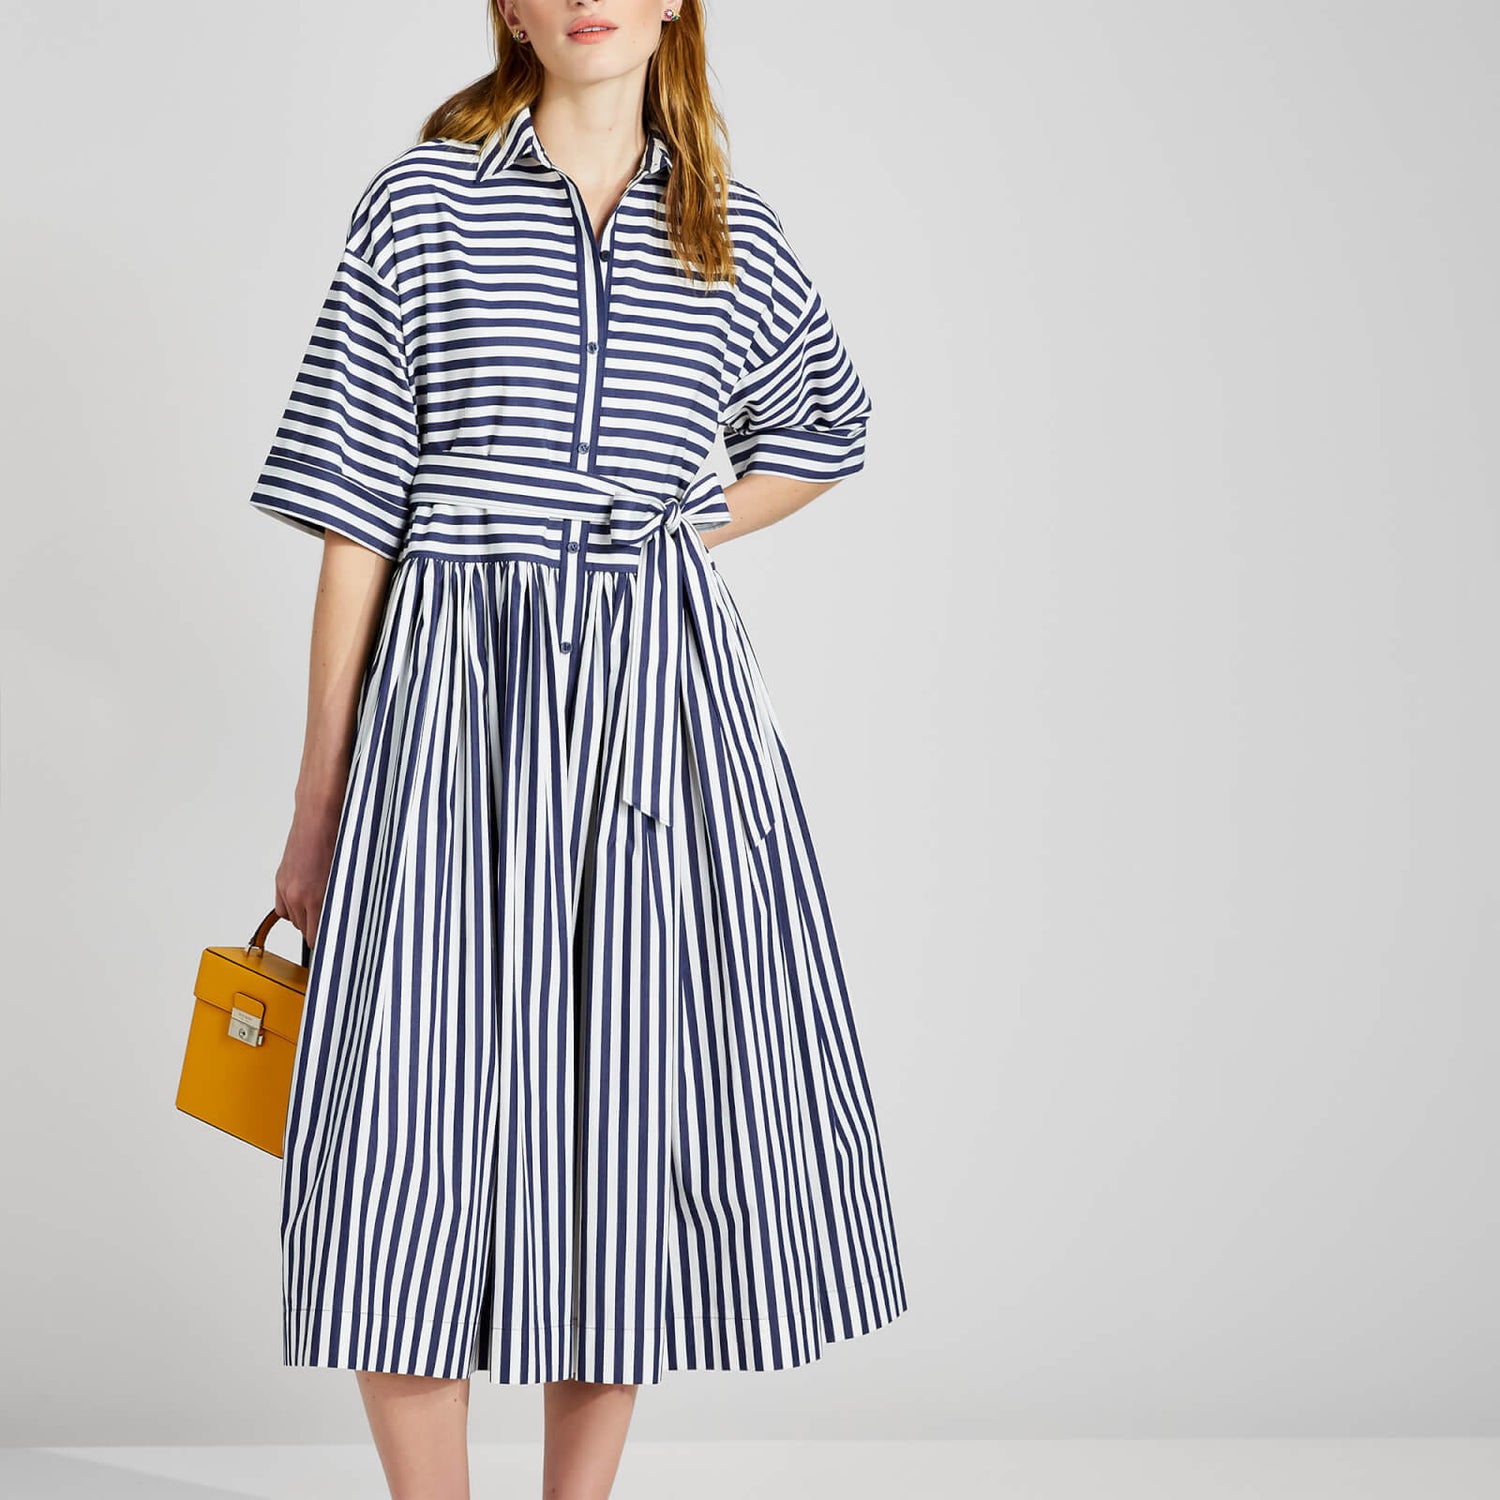 Kate Spade New York Women's Julia Stripe Midi Shirtdress - Blue/White Stripe - M